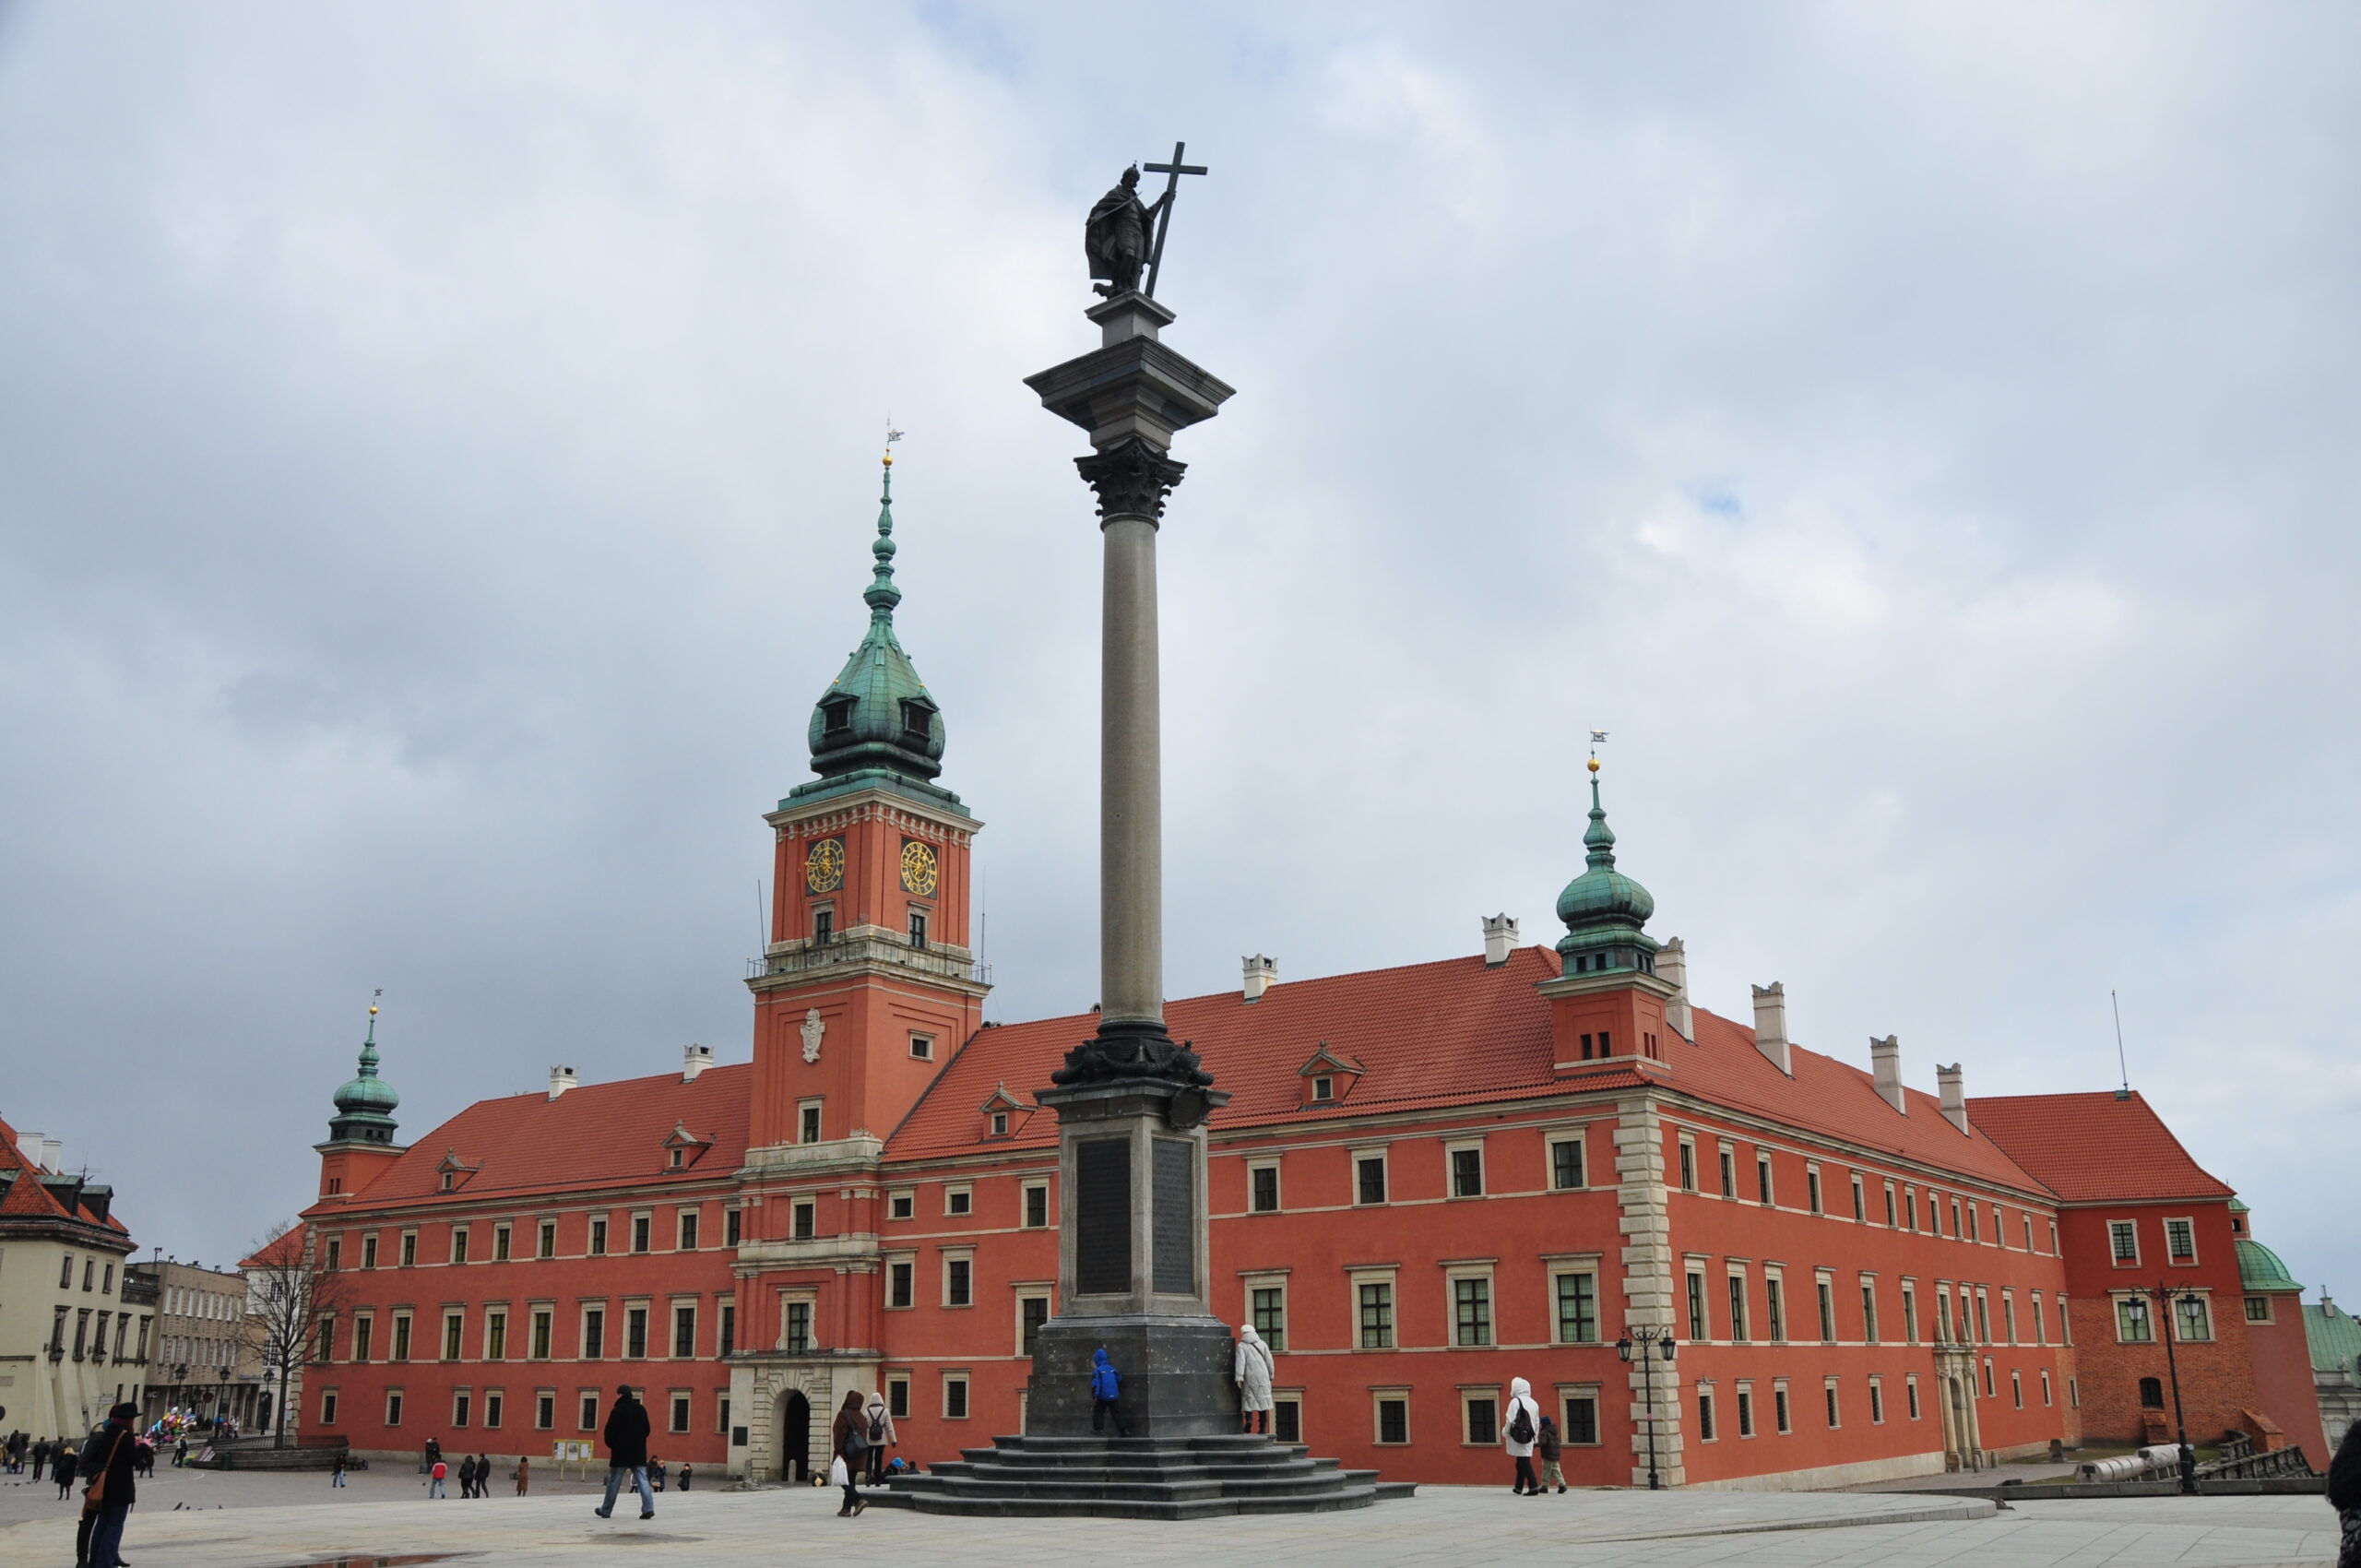 Zamki w Warszawie – historia, cennik, dojazd